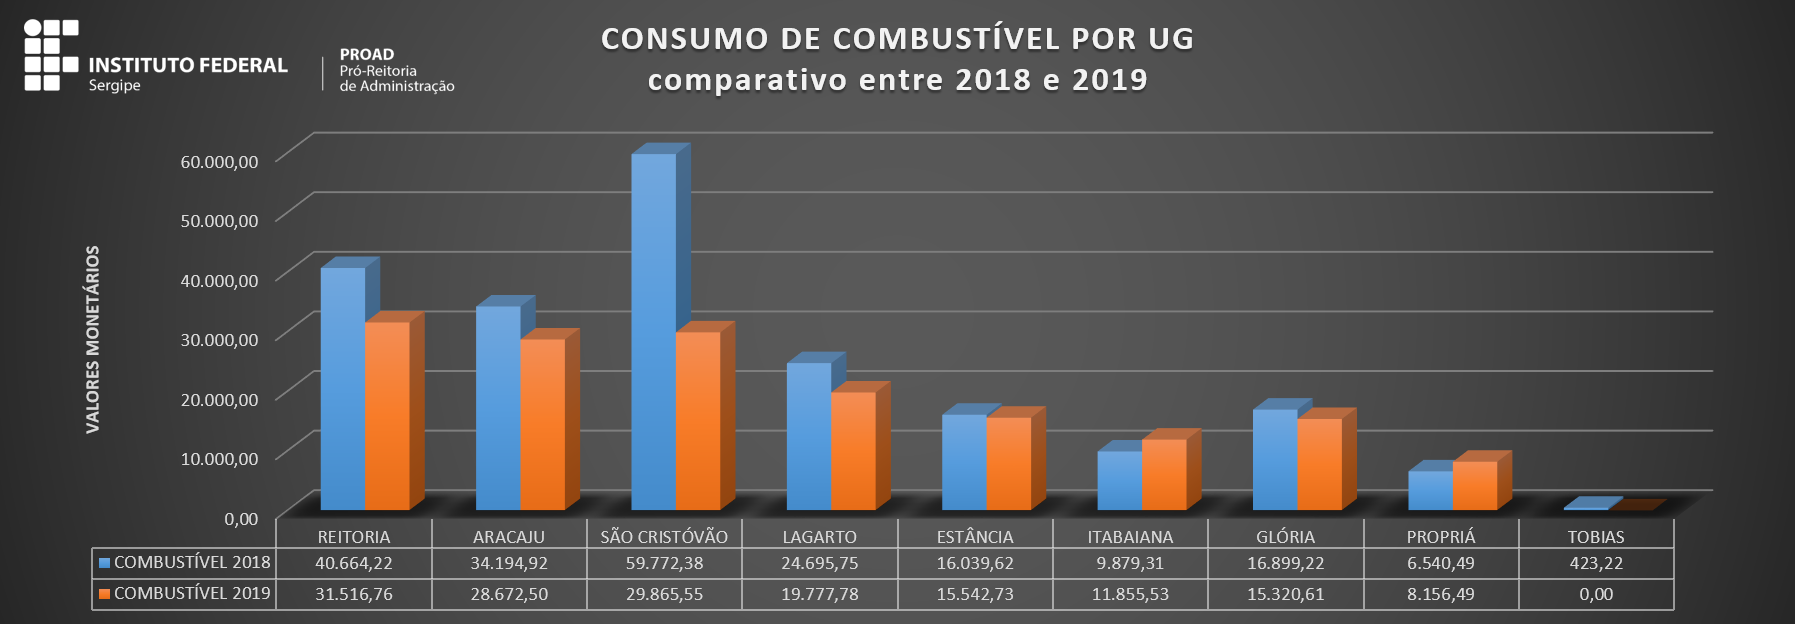 Consumo de Combustível por UG